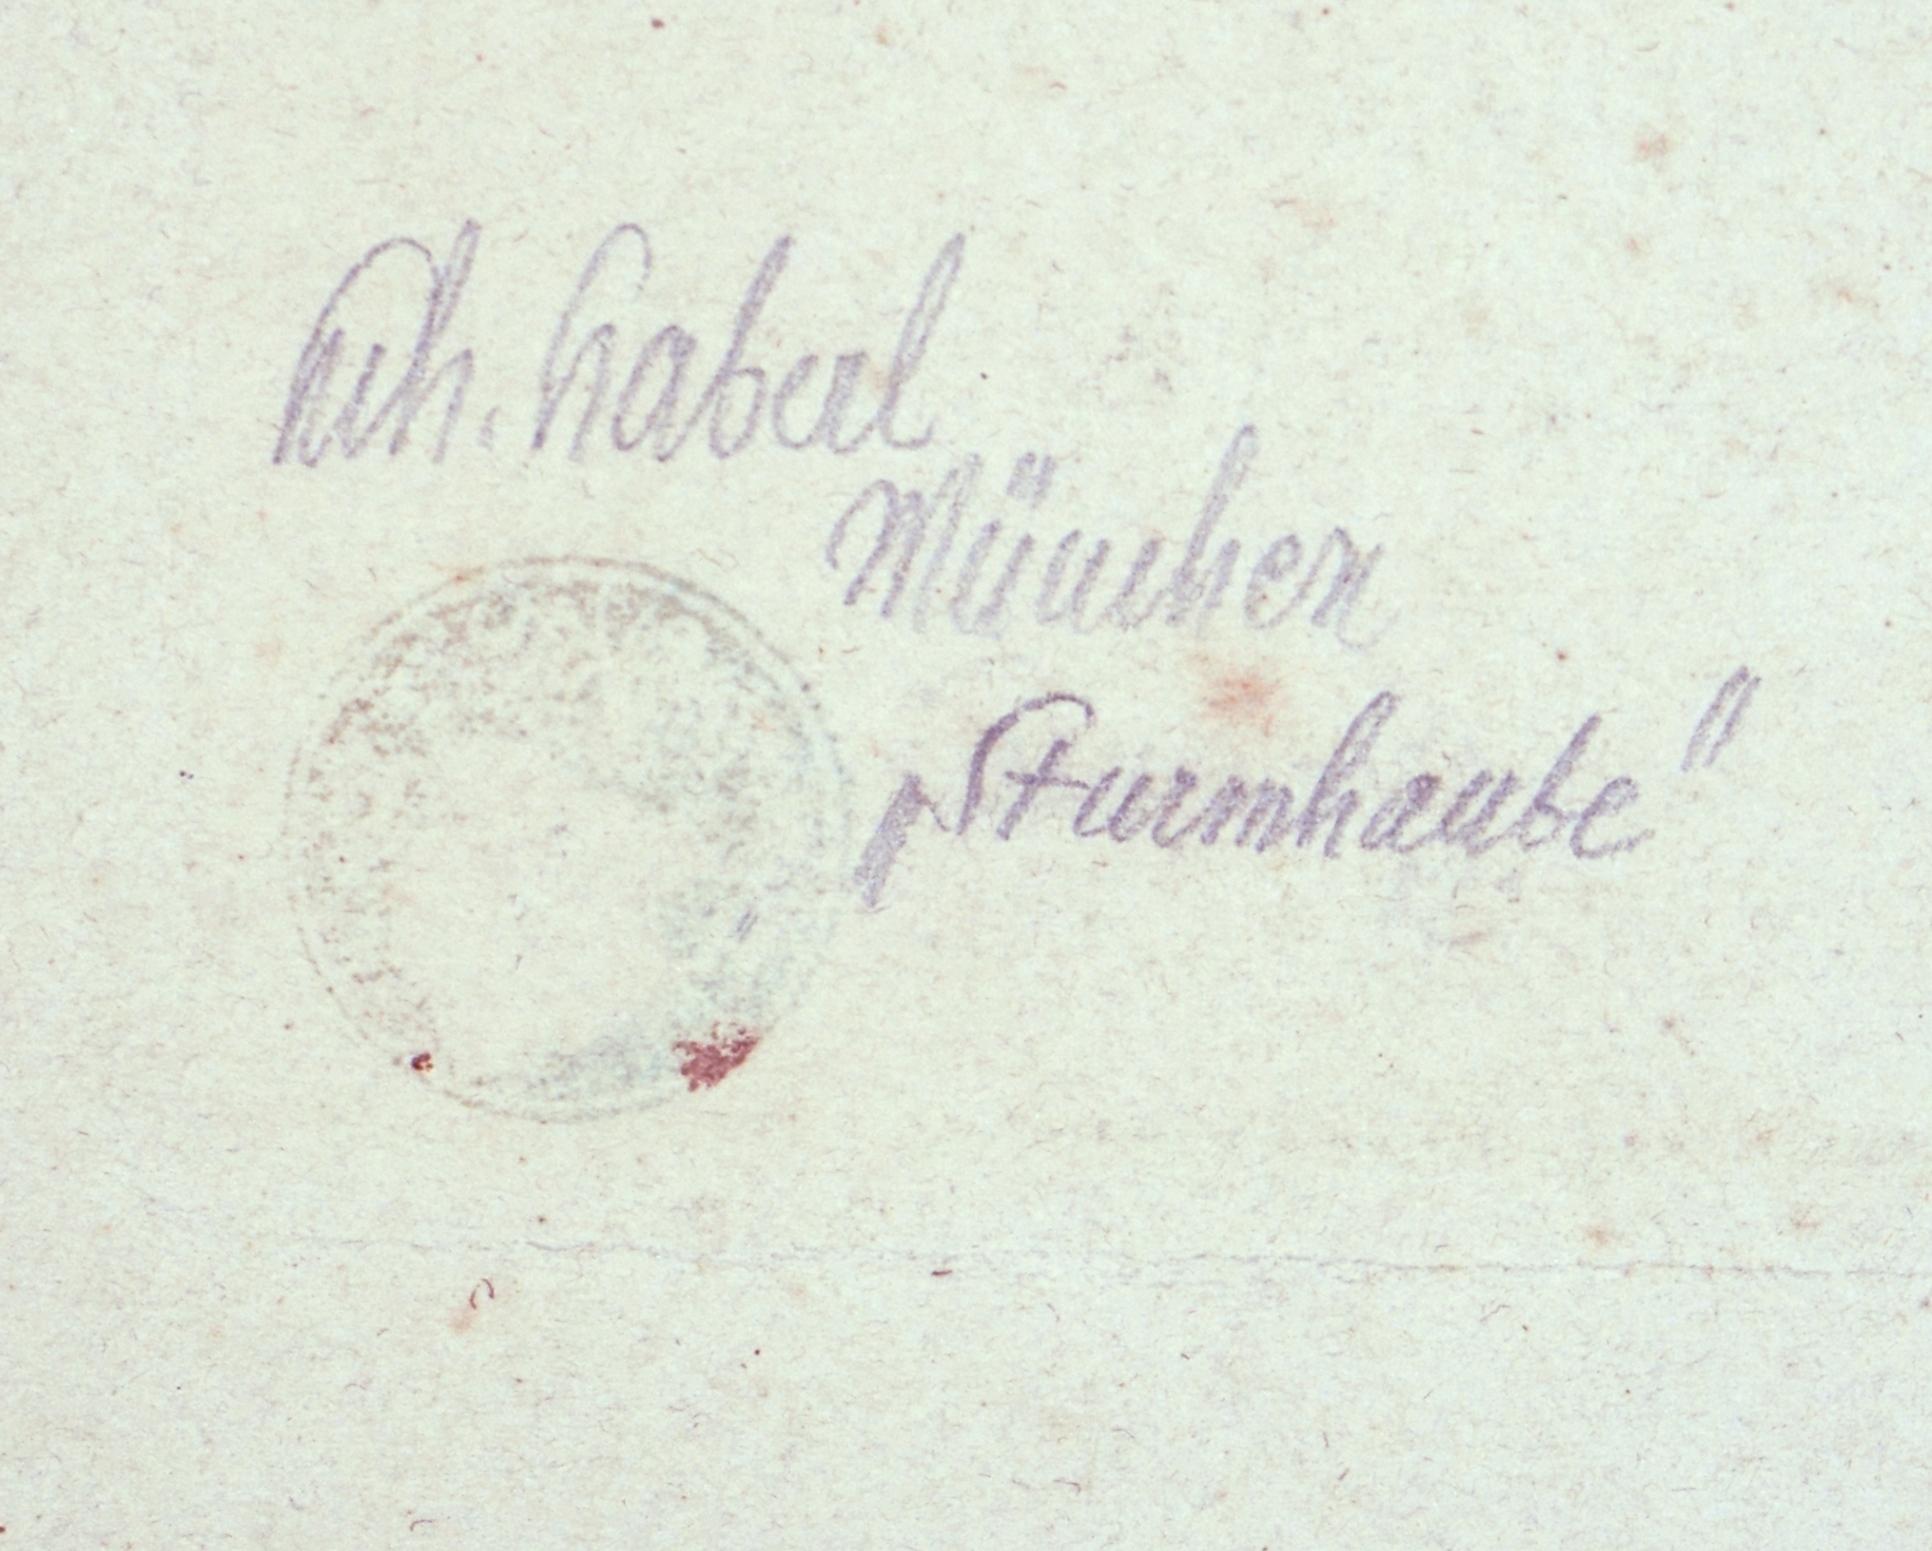 Heinrich Haberl (1869 Passau bis 1934 München), Sturmhaube, um 1900. Kaltnadelradierung, 14 x 10 cm (Plattenkante), 28 x 21 cm (Blattgröße), 39 x 29 cm (Passepartout), links unten in Blei betitelt 